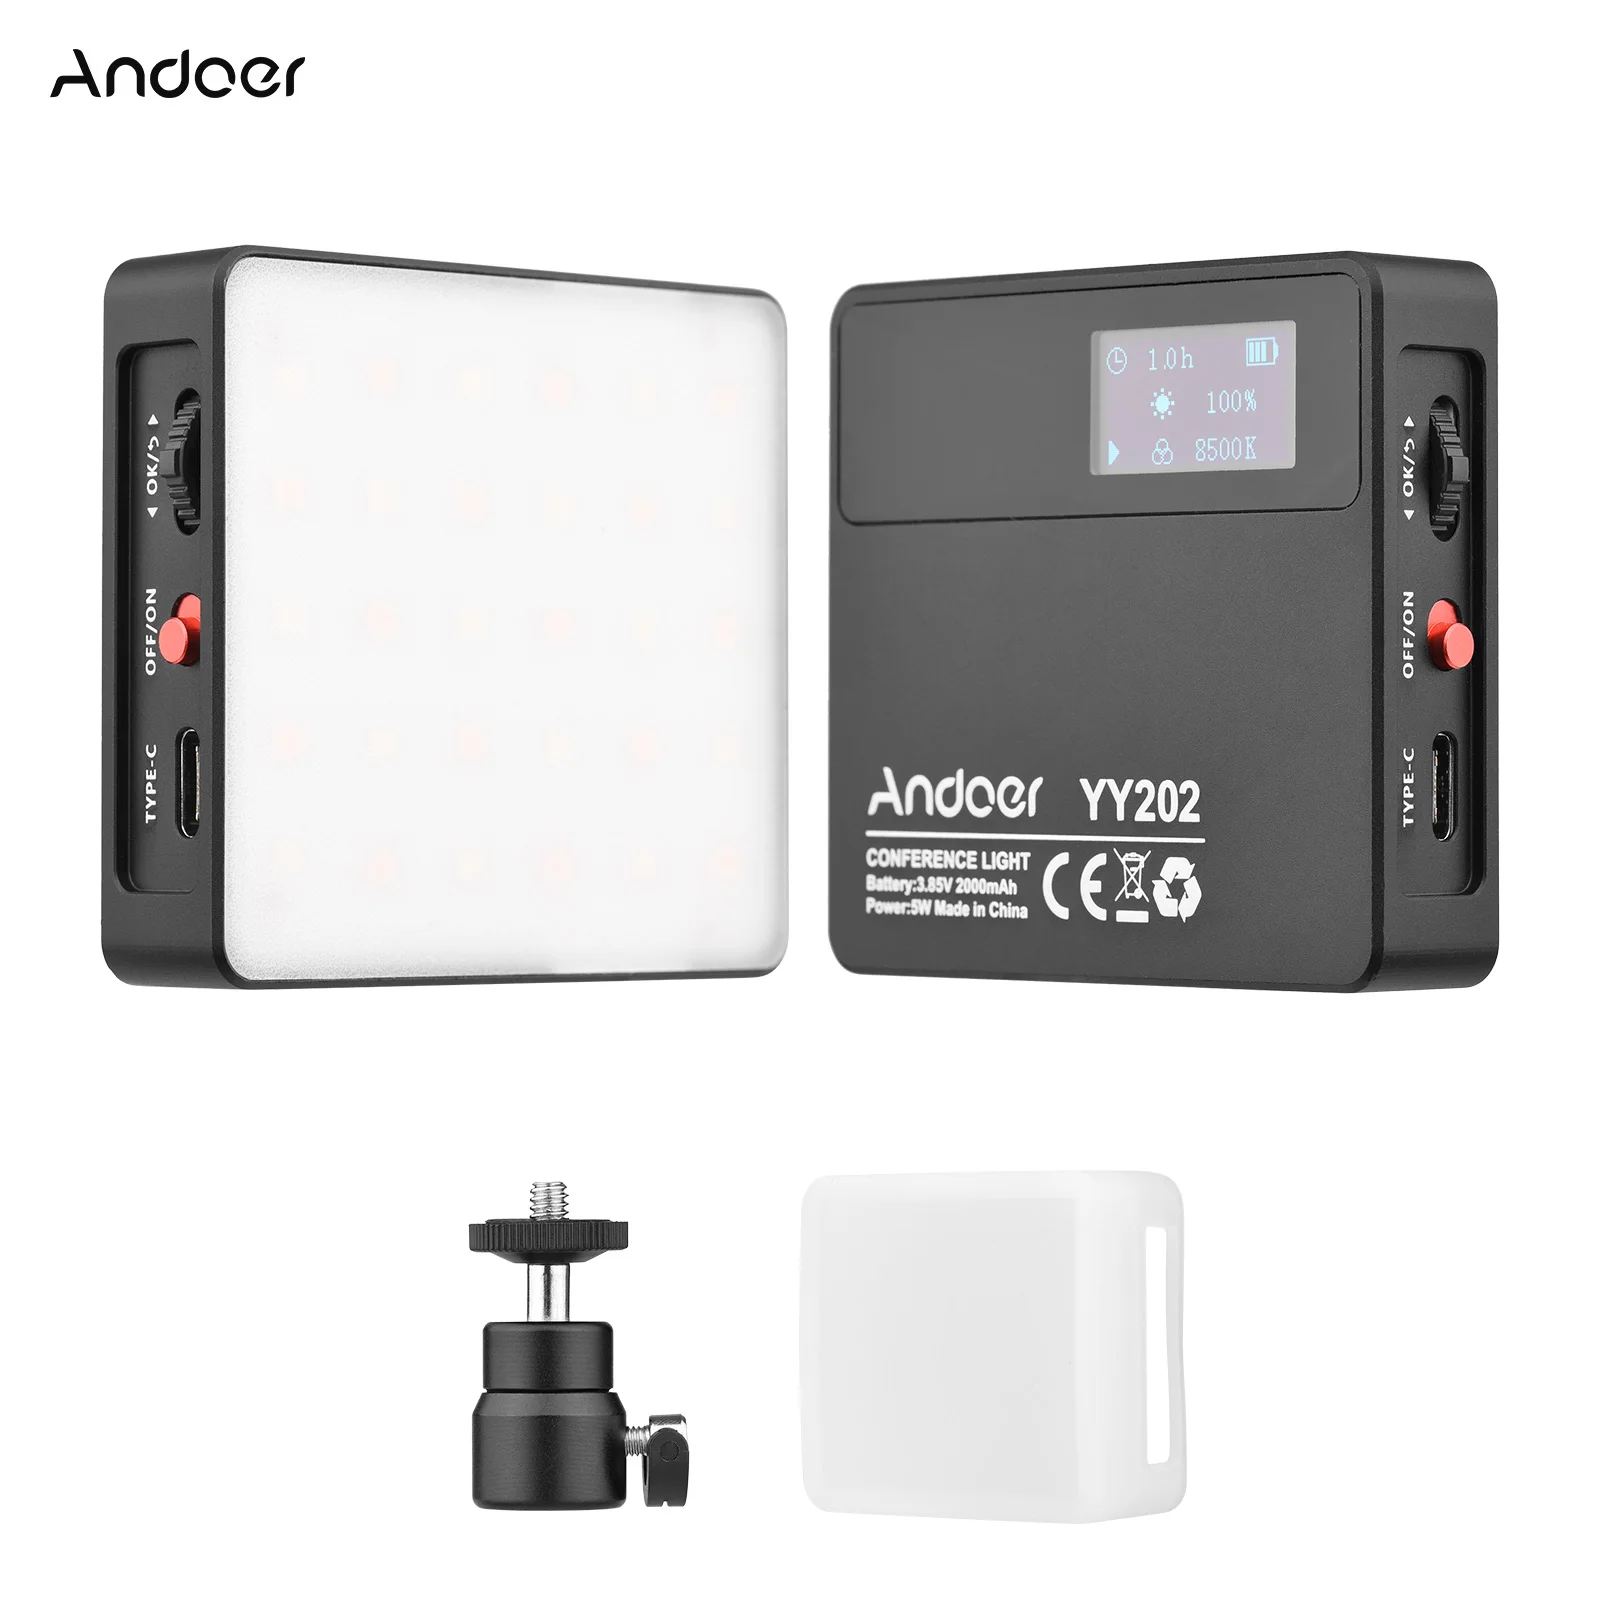 

Andoer YY202 Bi-Color Pocket LED Video Light Photography Conference Fill Light 2500K-8500K Dimmable for Vlog Live Video